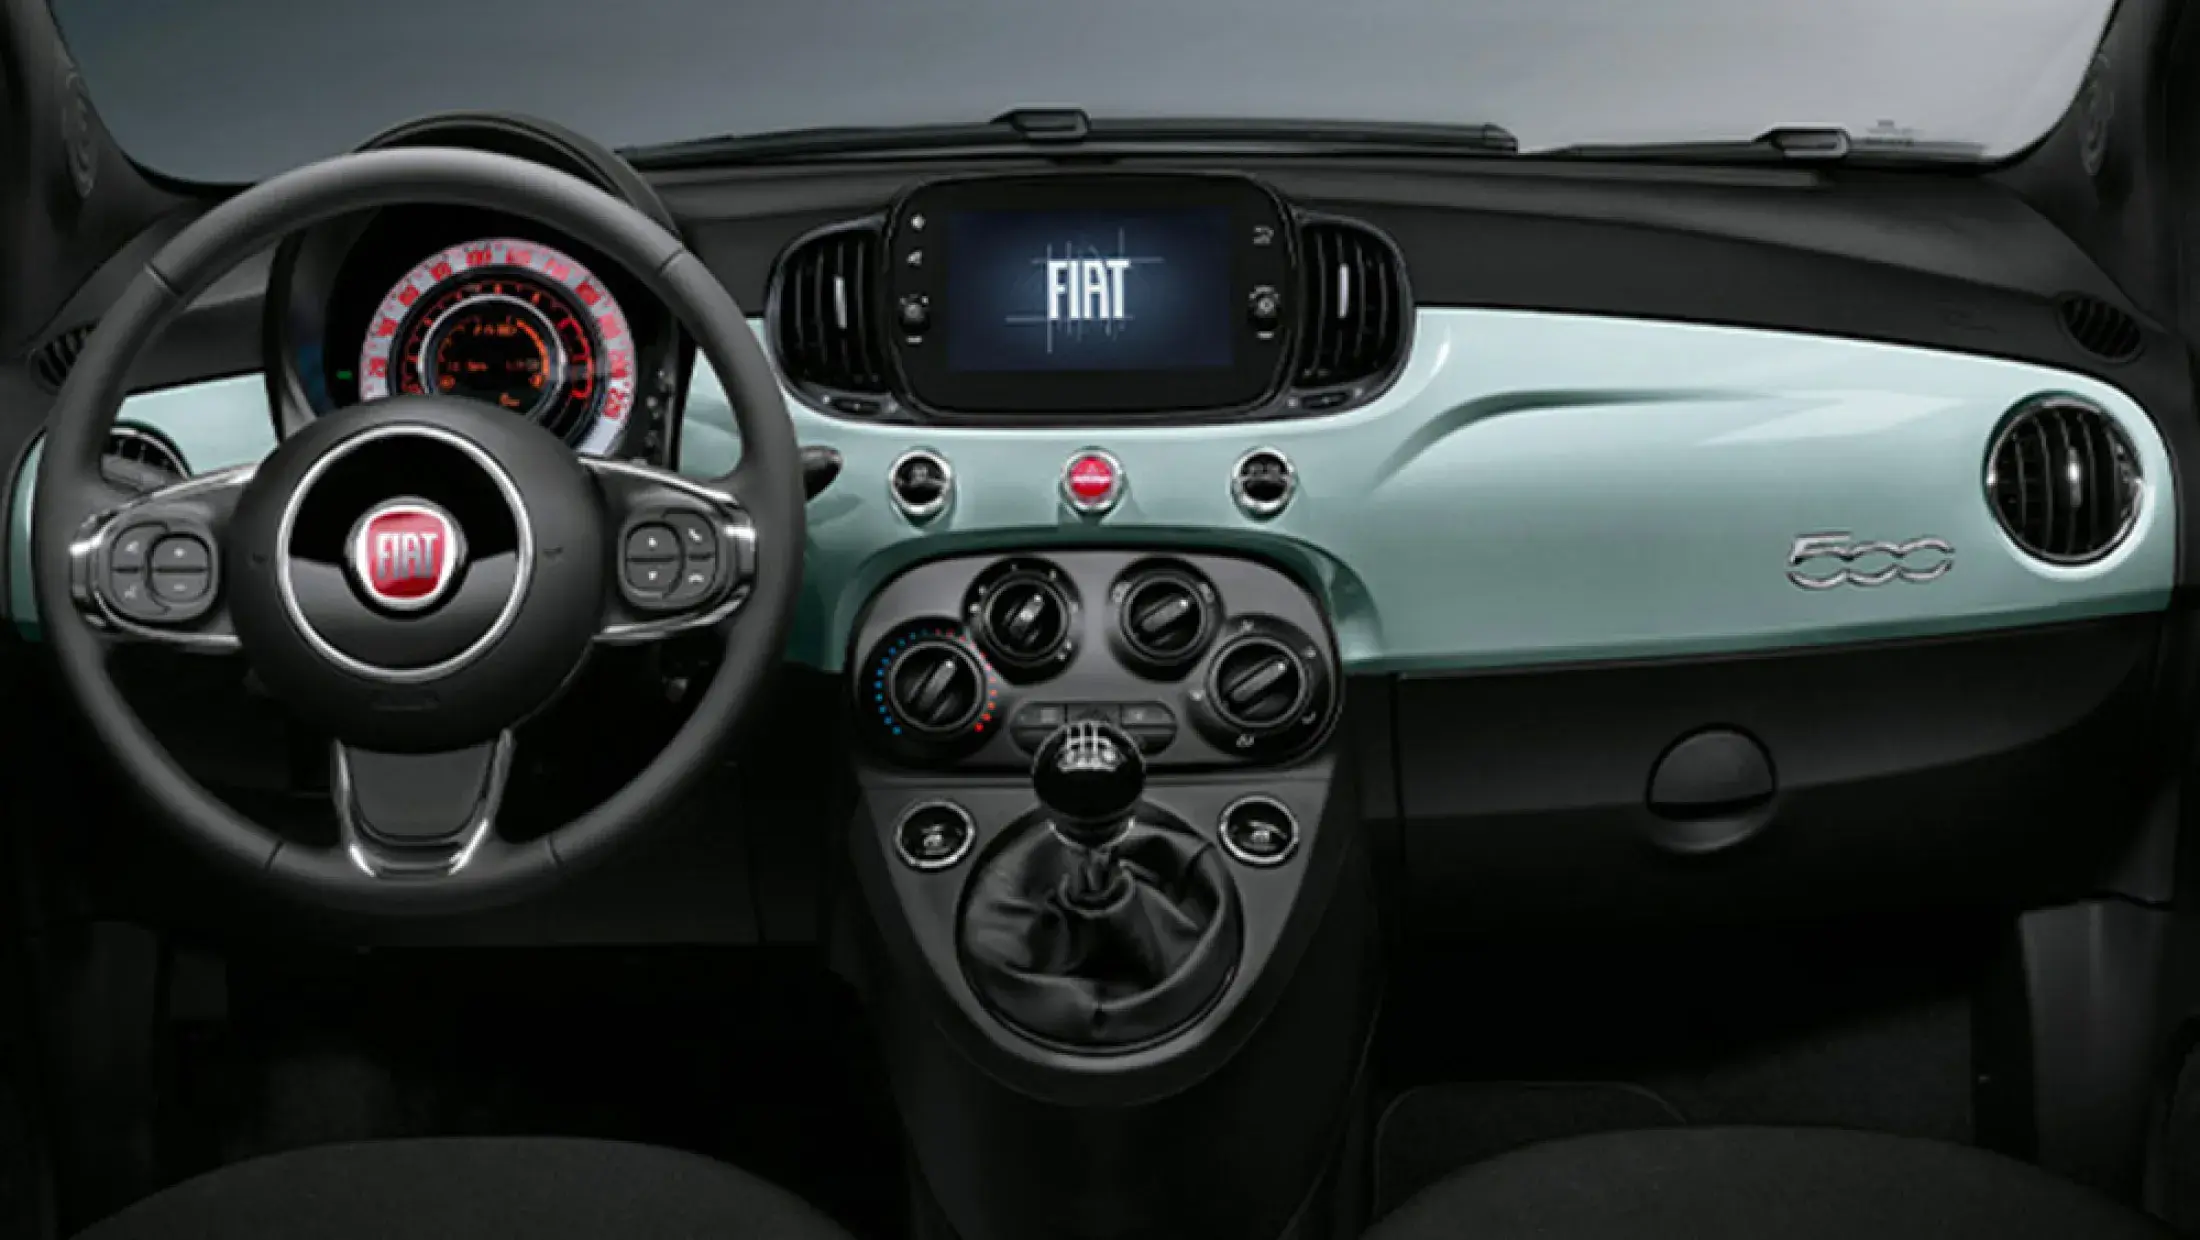 Fiat 500 dashboard